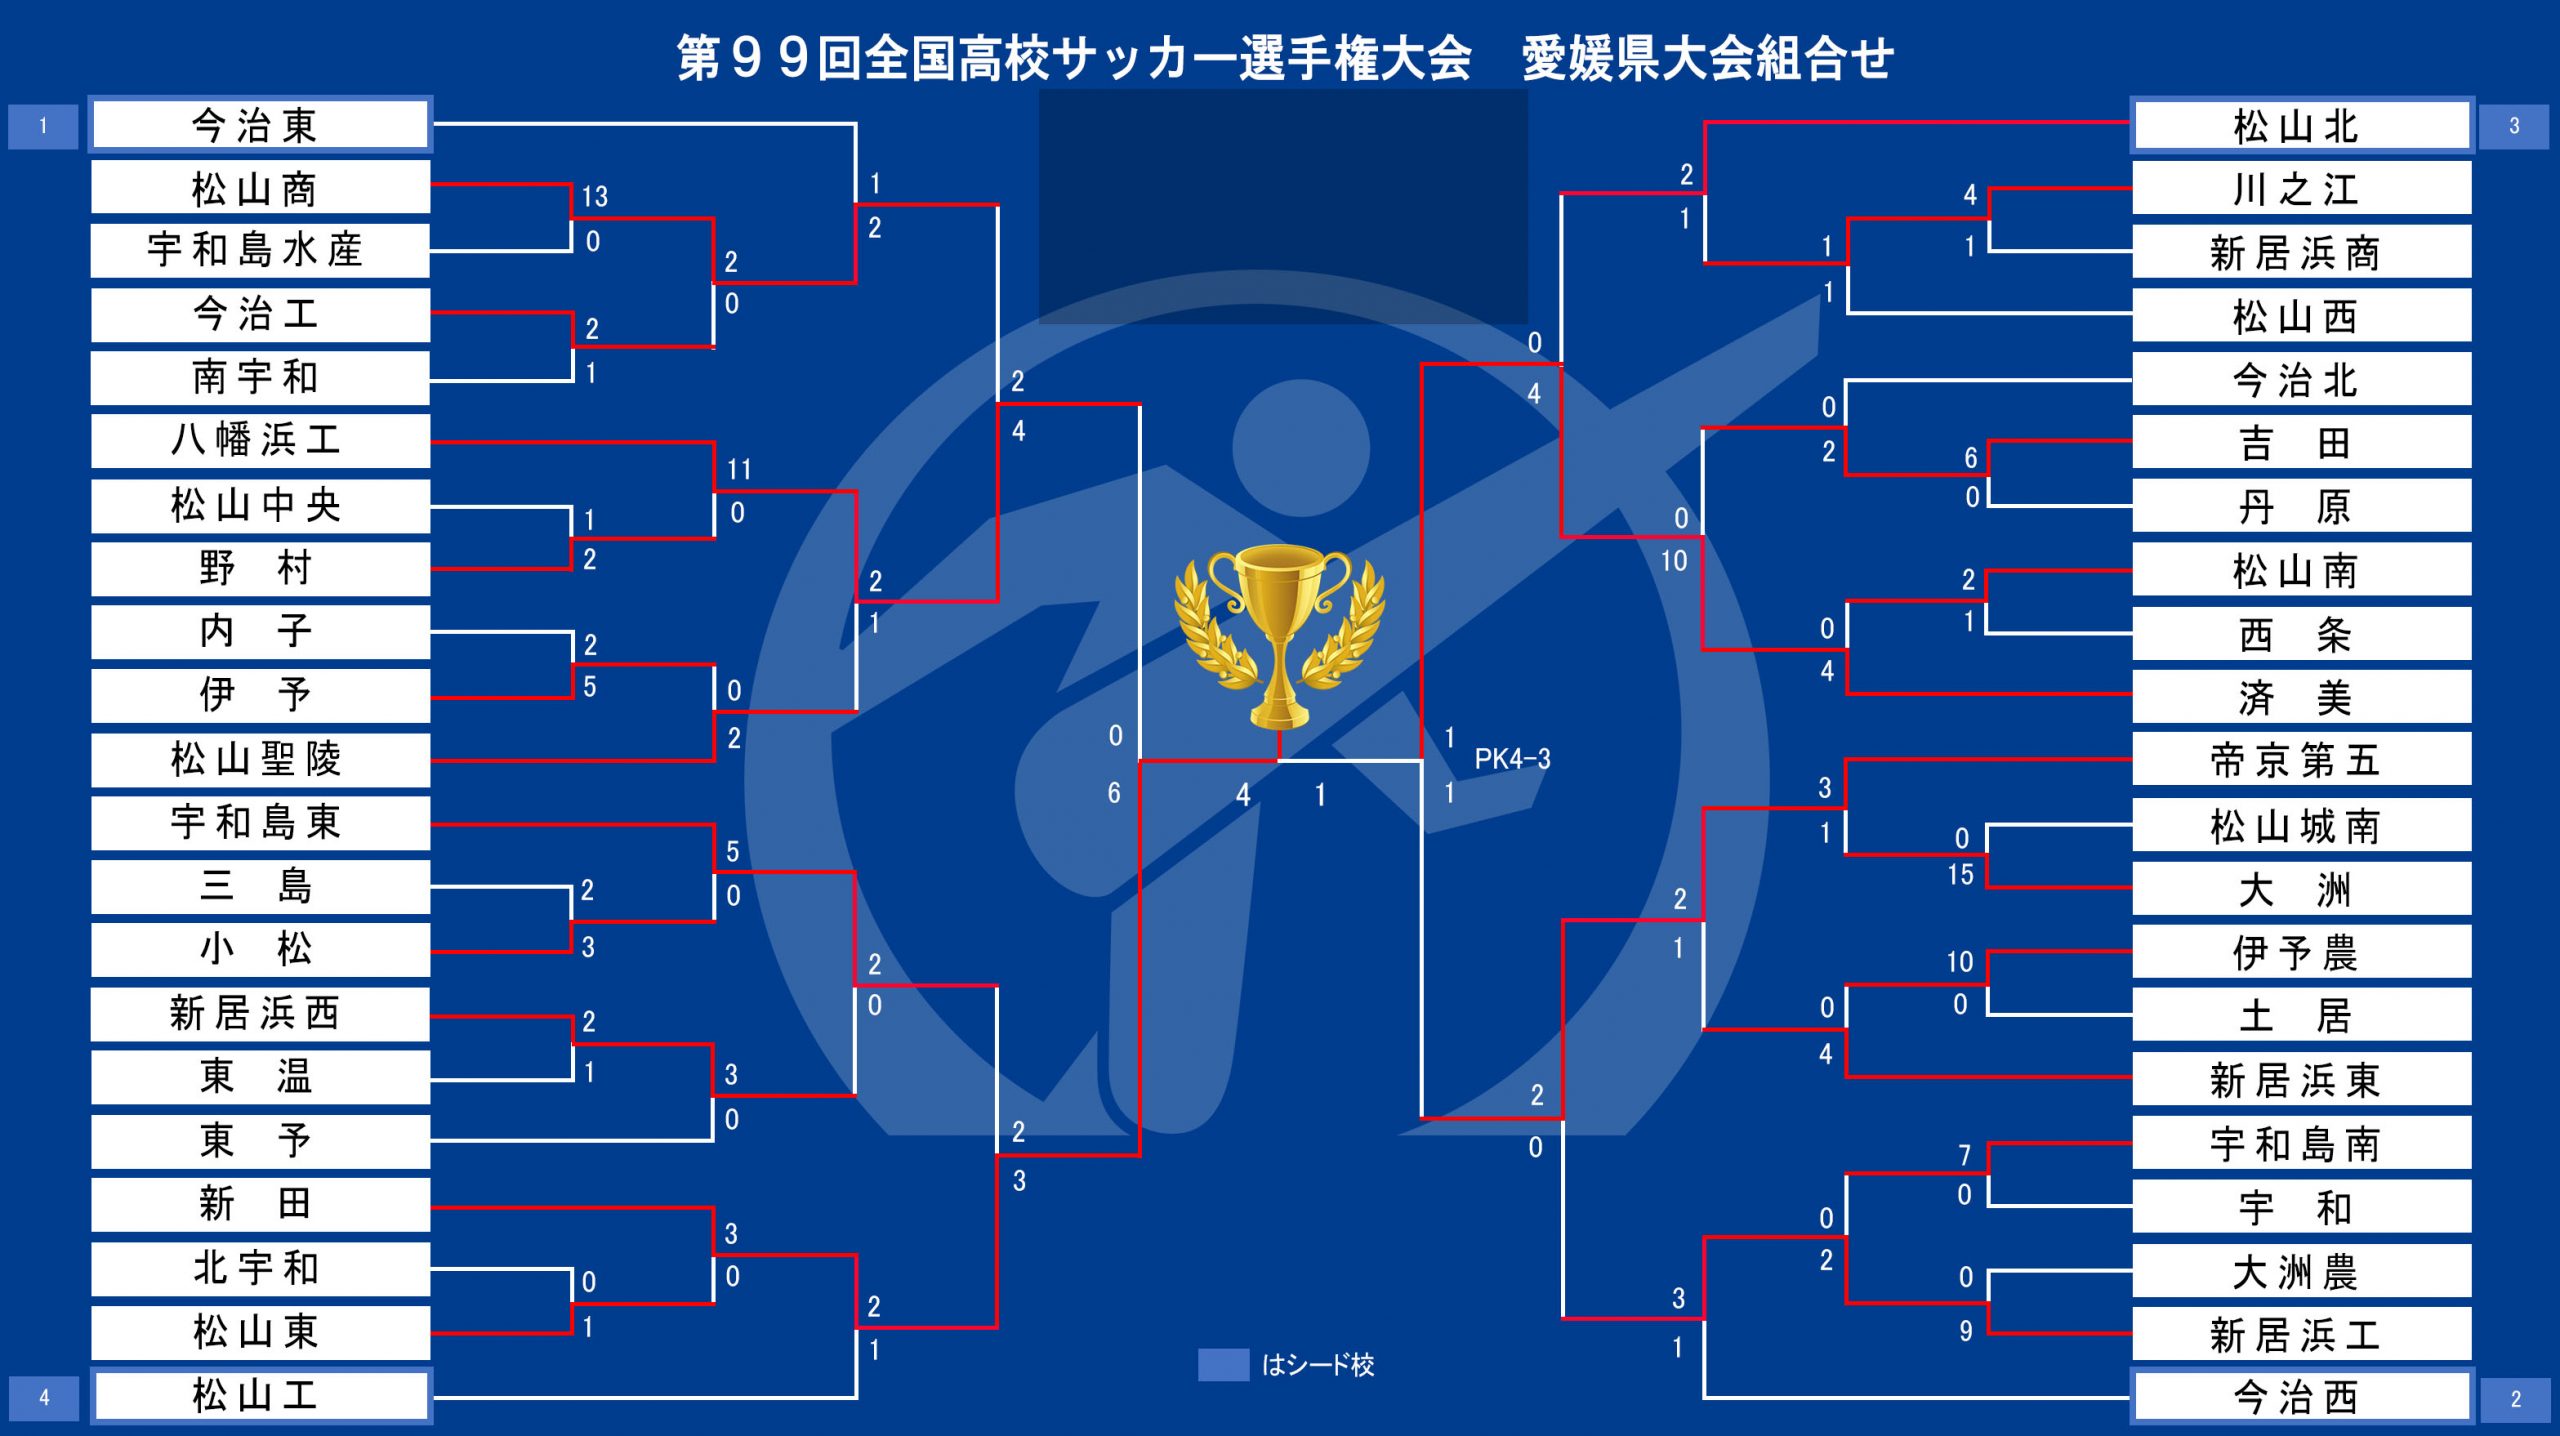 愛媛 県 高校 サッカー 選手権 2020